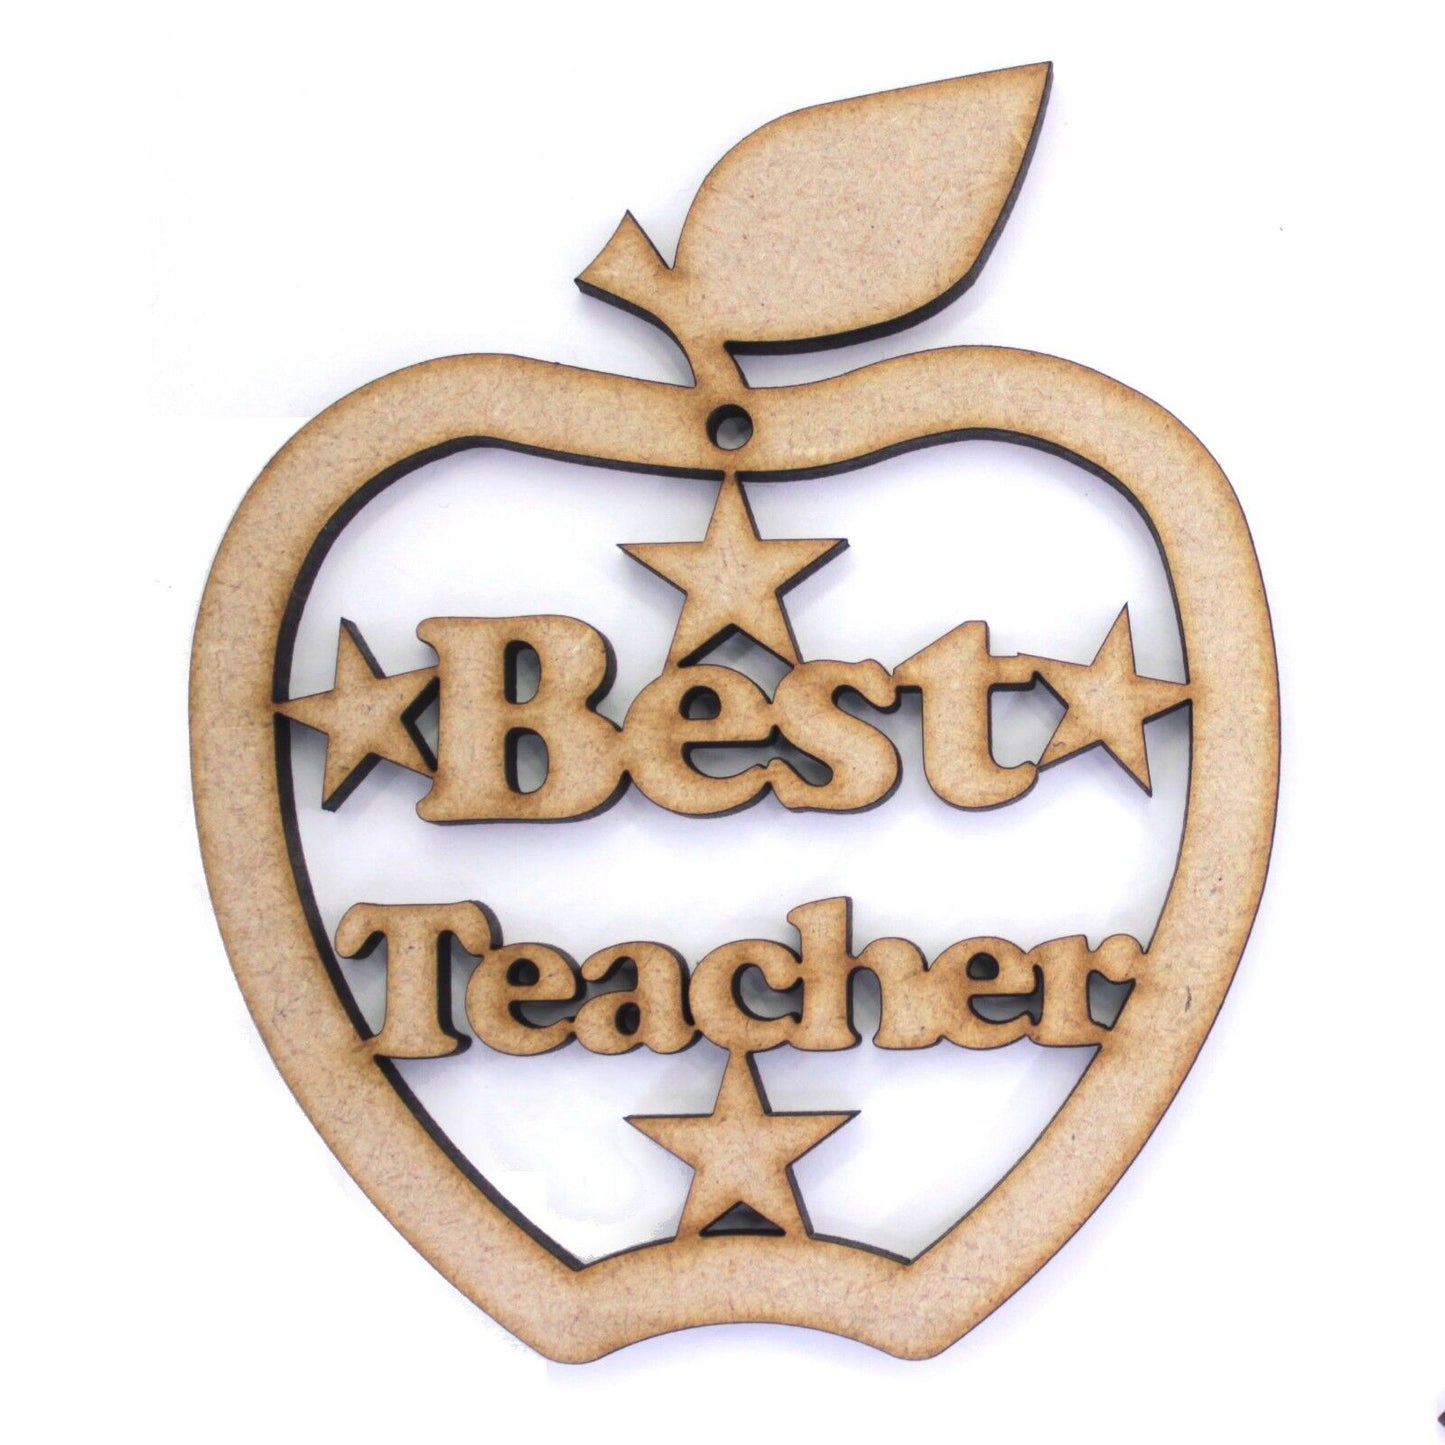 Best Teacher Stand / Hanger Apple shape with Leaf shape base. 4mm MDF Gift